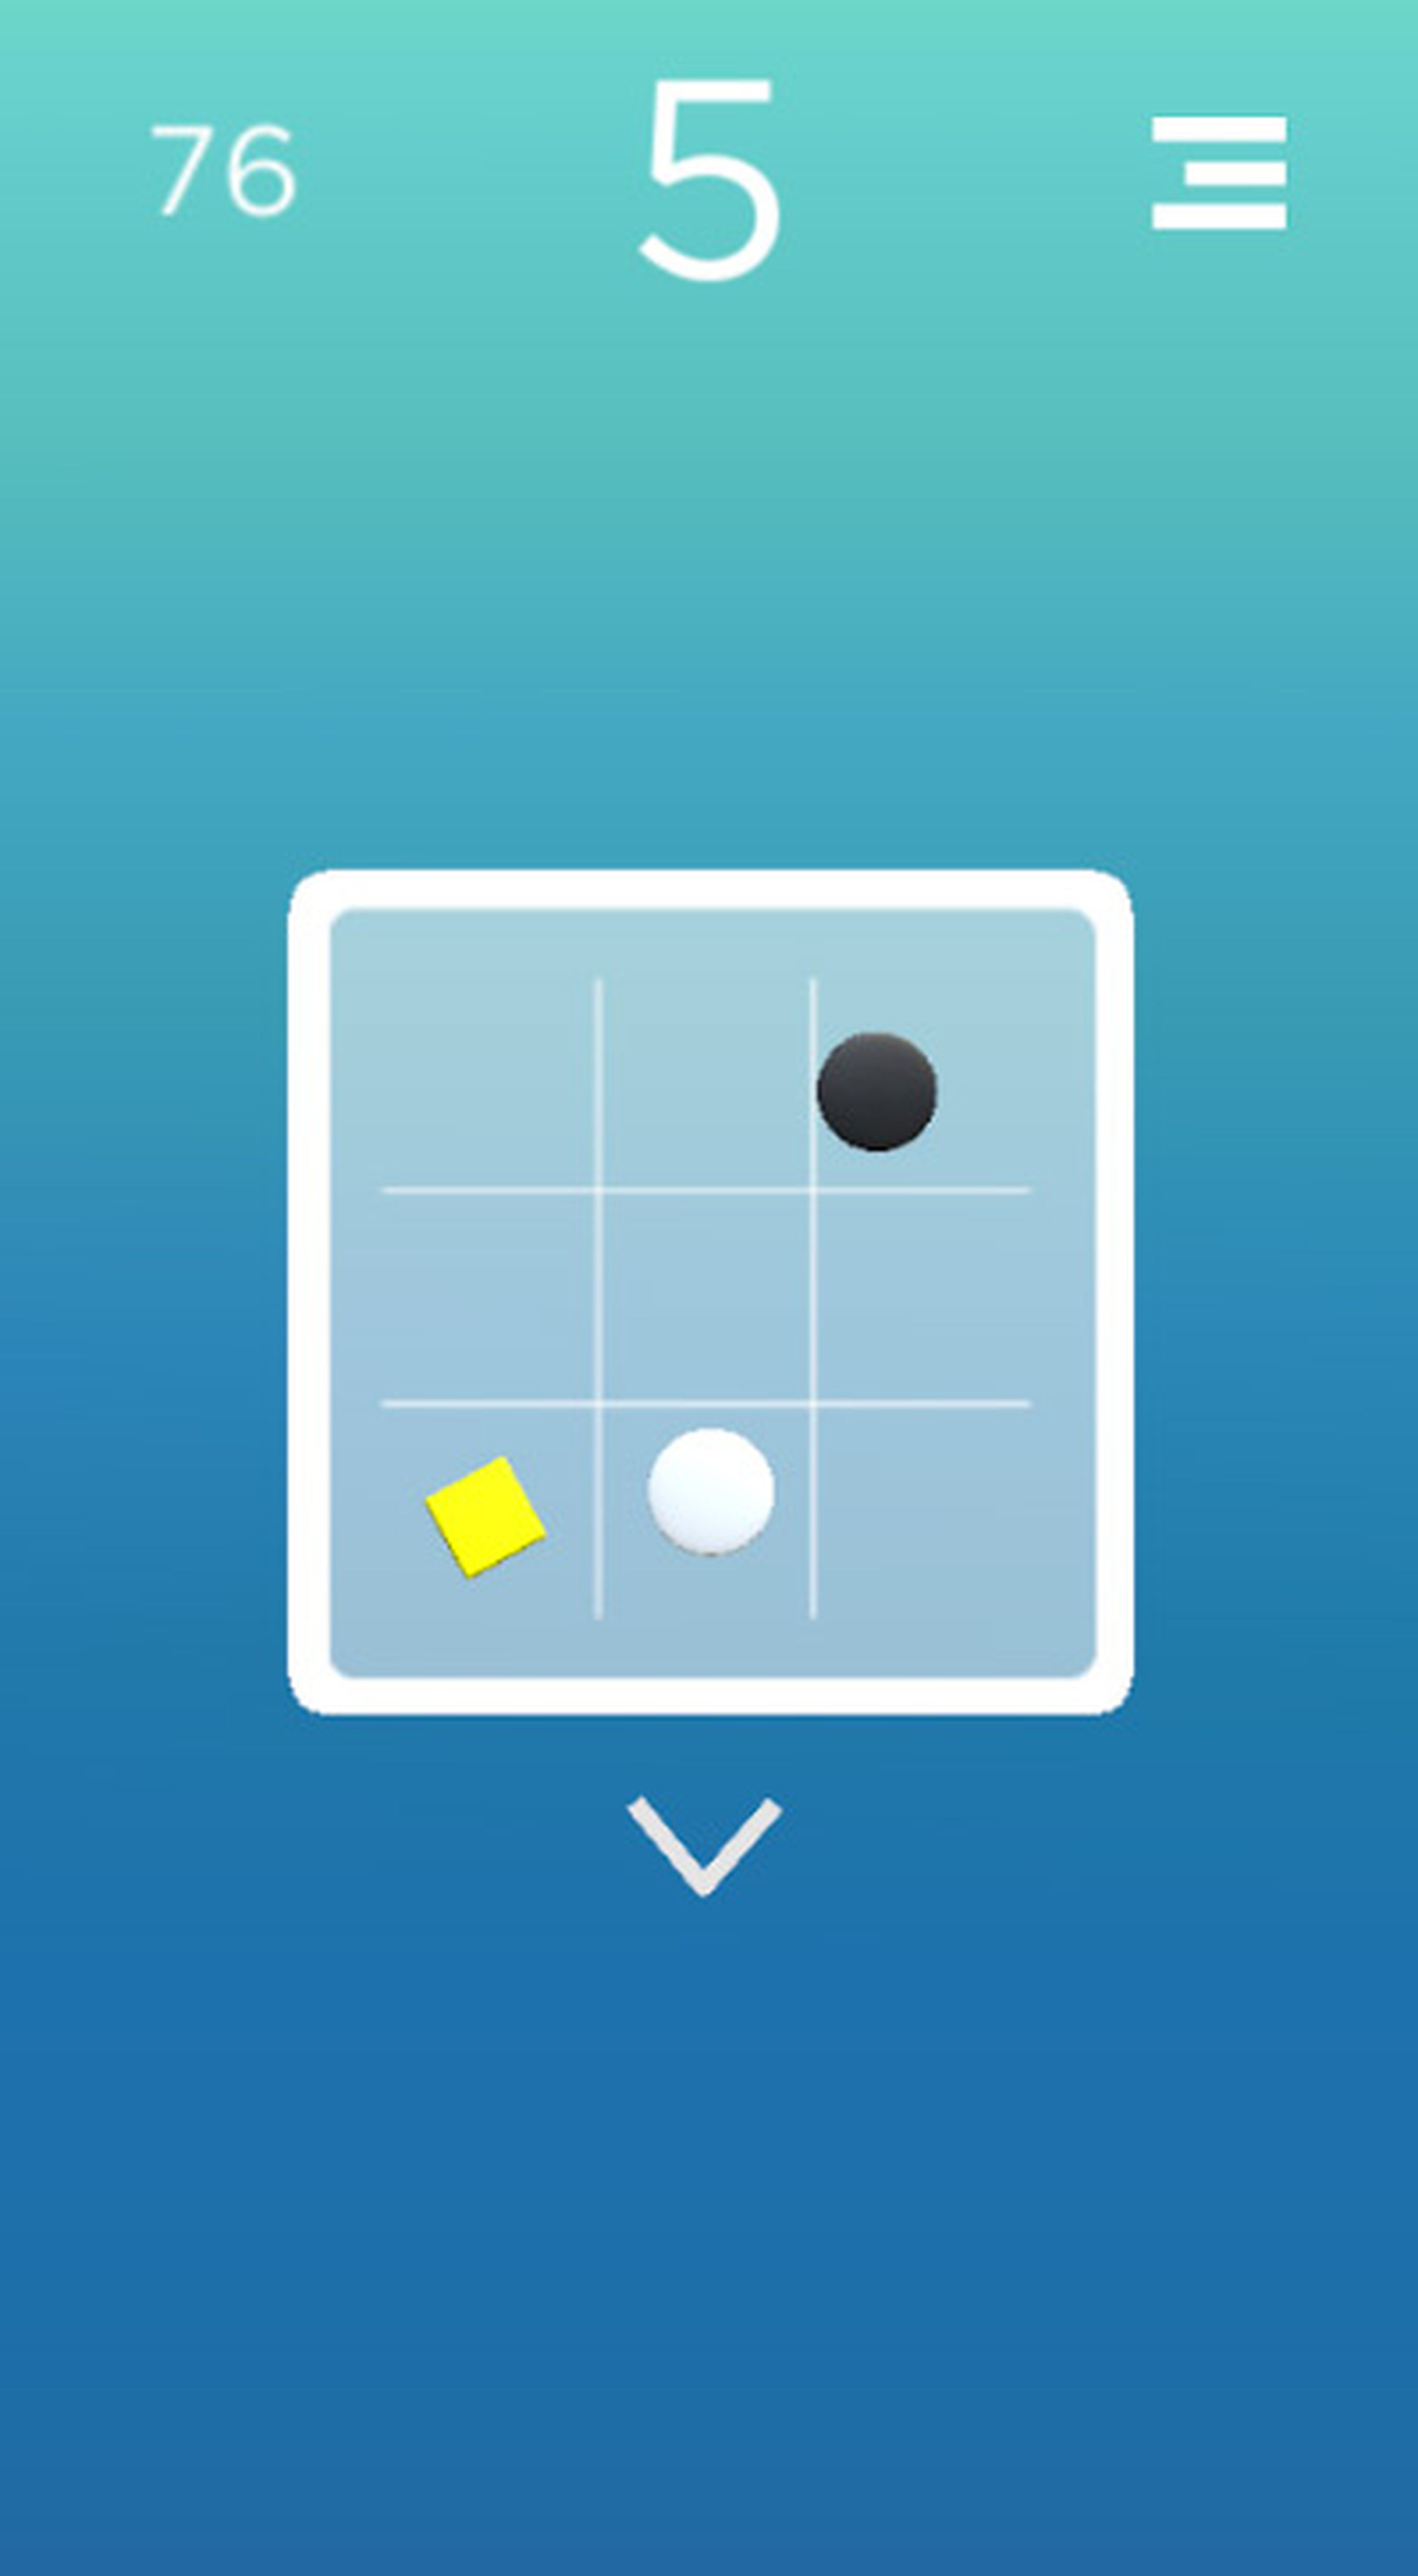 Zampa Cubes es un videojuego para Android que apuesta por la estética minimalista.